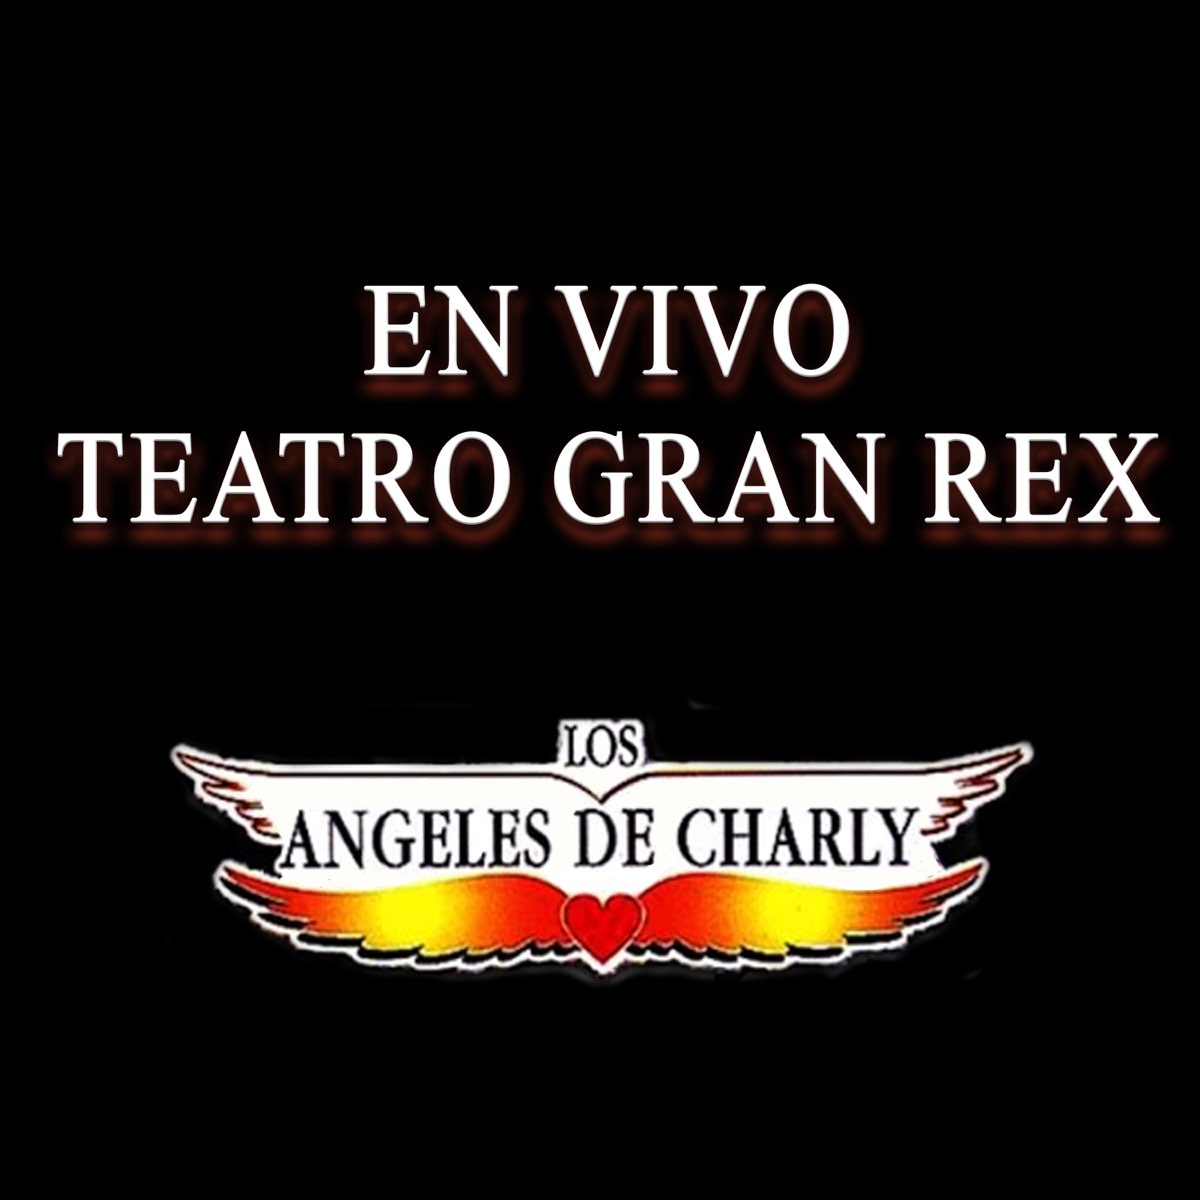 Teatro Gran Rex (En Vivo) - Album by Los Ángeles de Charly - Apple Music